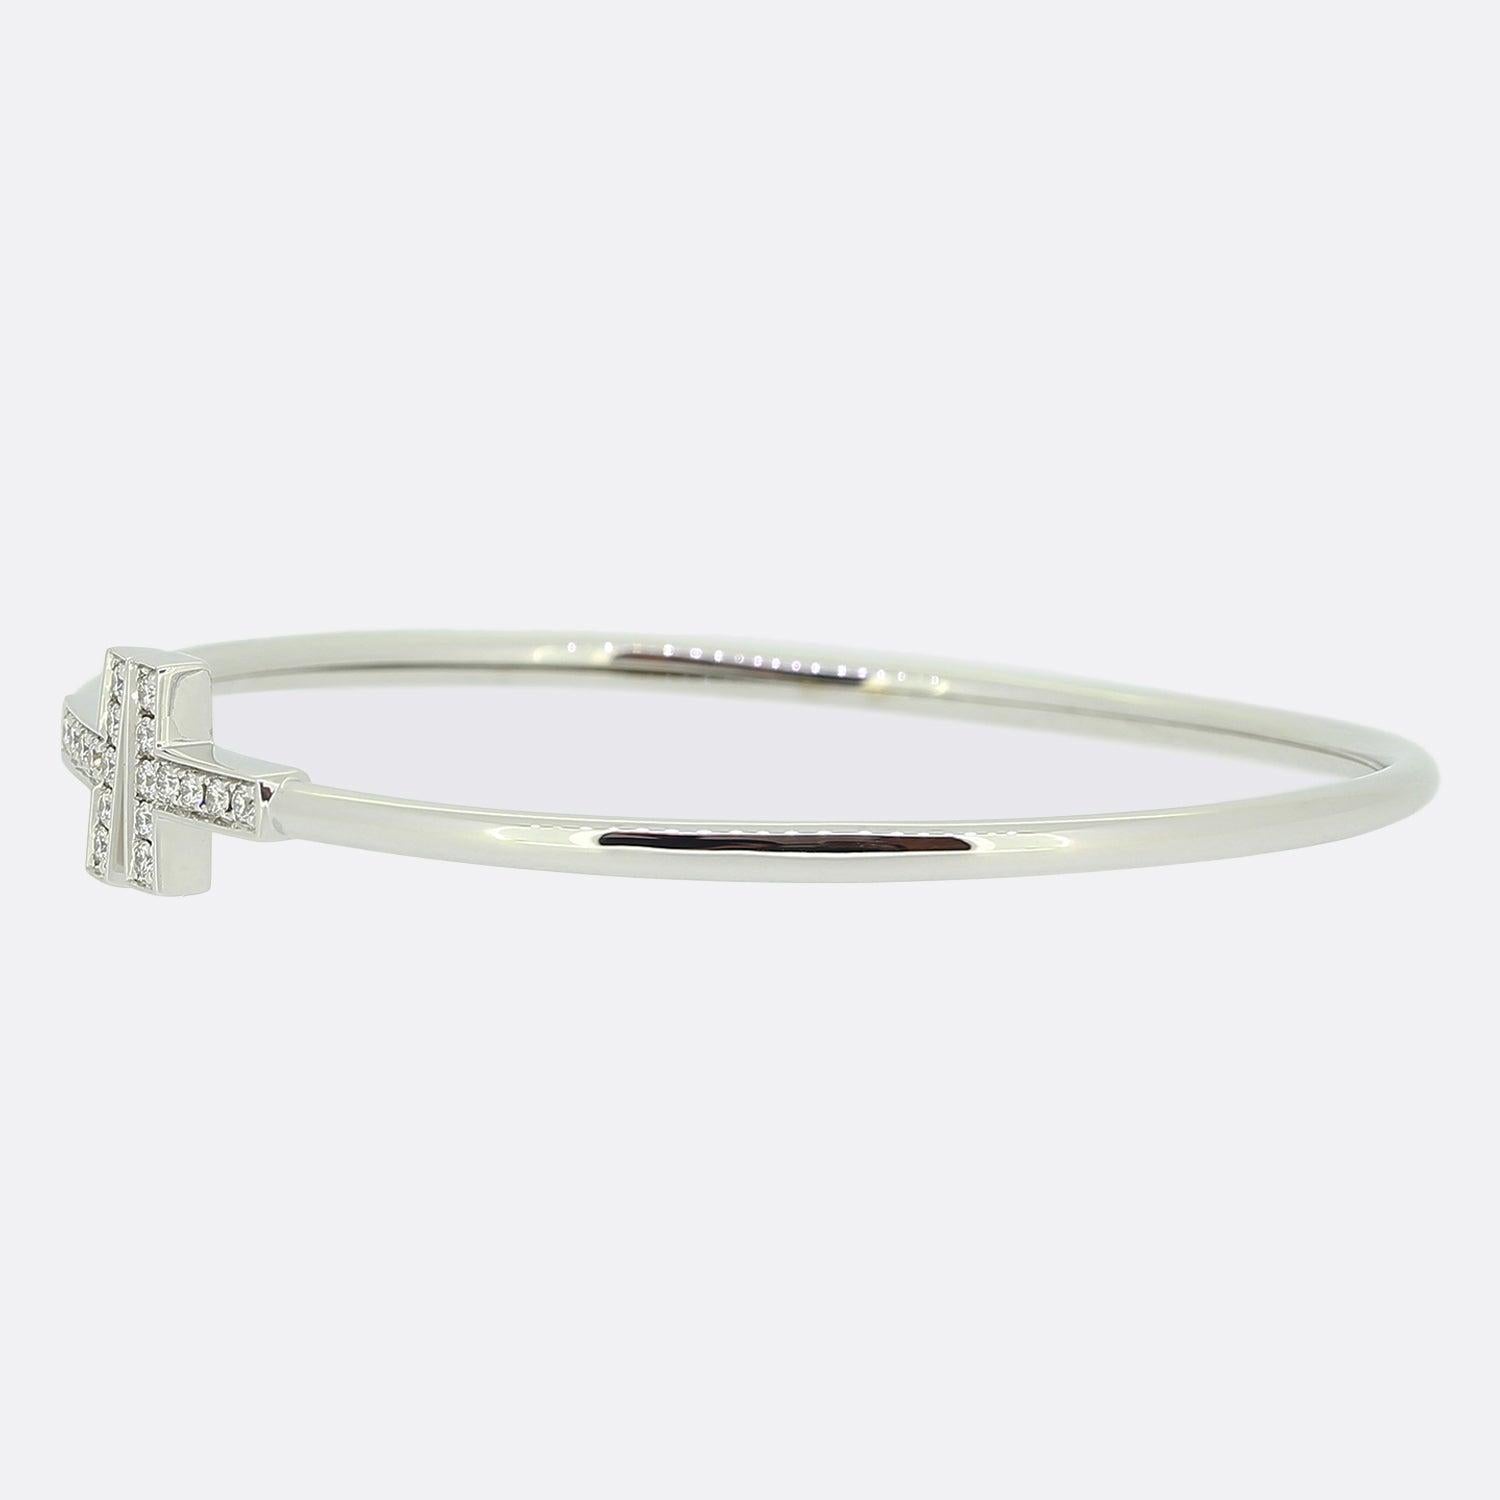 Nous avons ici un fabuleux bracelet en diamants du créateur de bijoux de luxe de renommée mondiale, Tiffany & Co. Cette pièce fait partie de la collection 